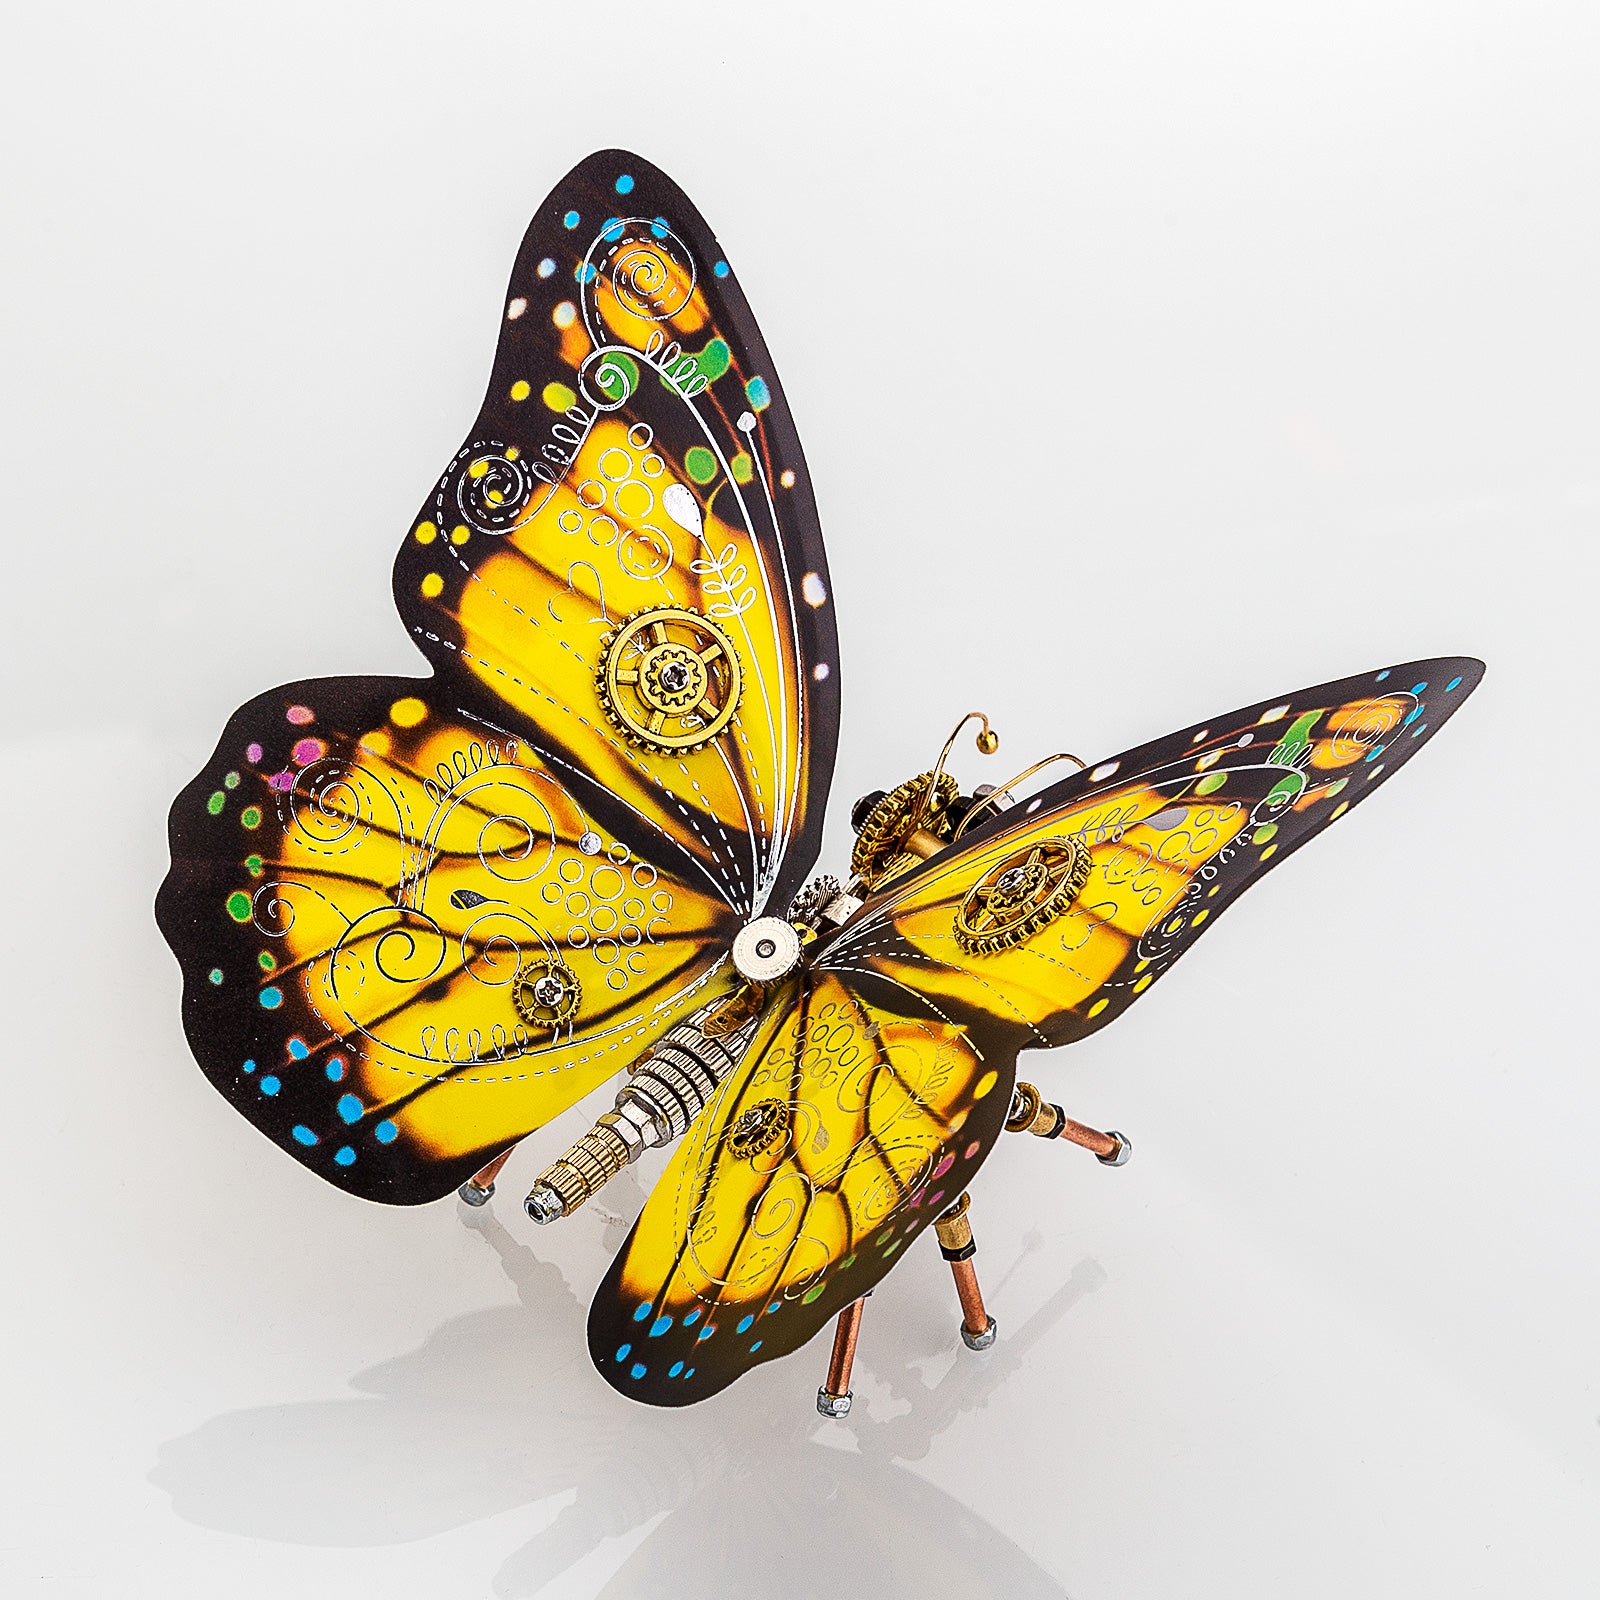 150Pcs Monarch Butterfly Steampunk Assembly Model